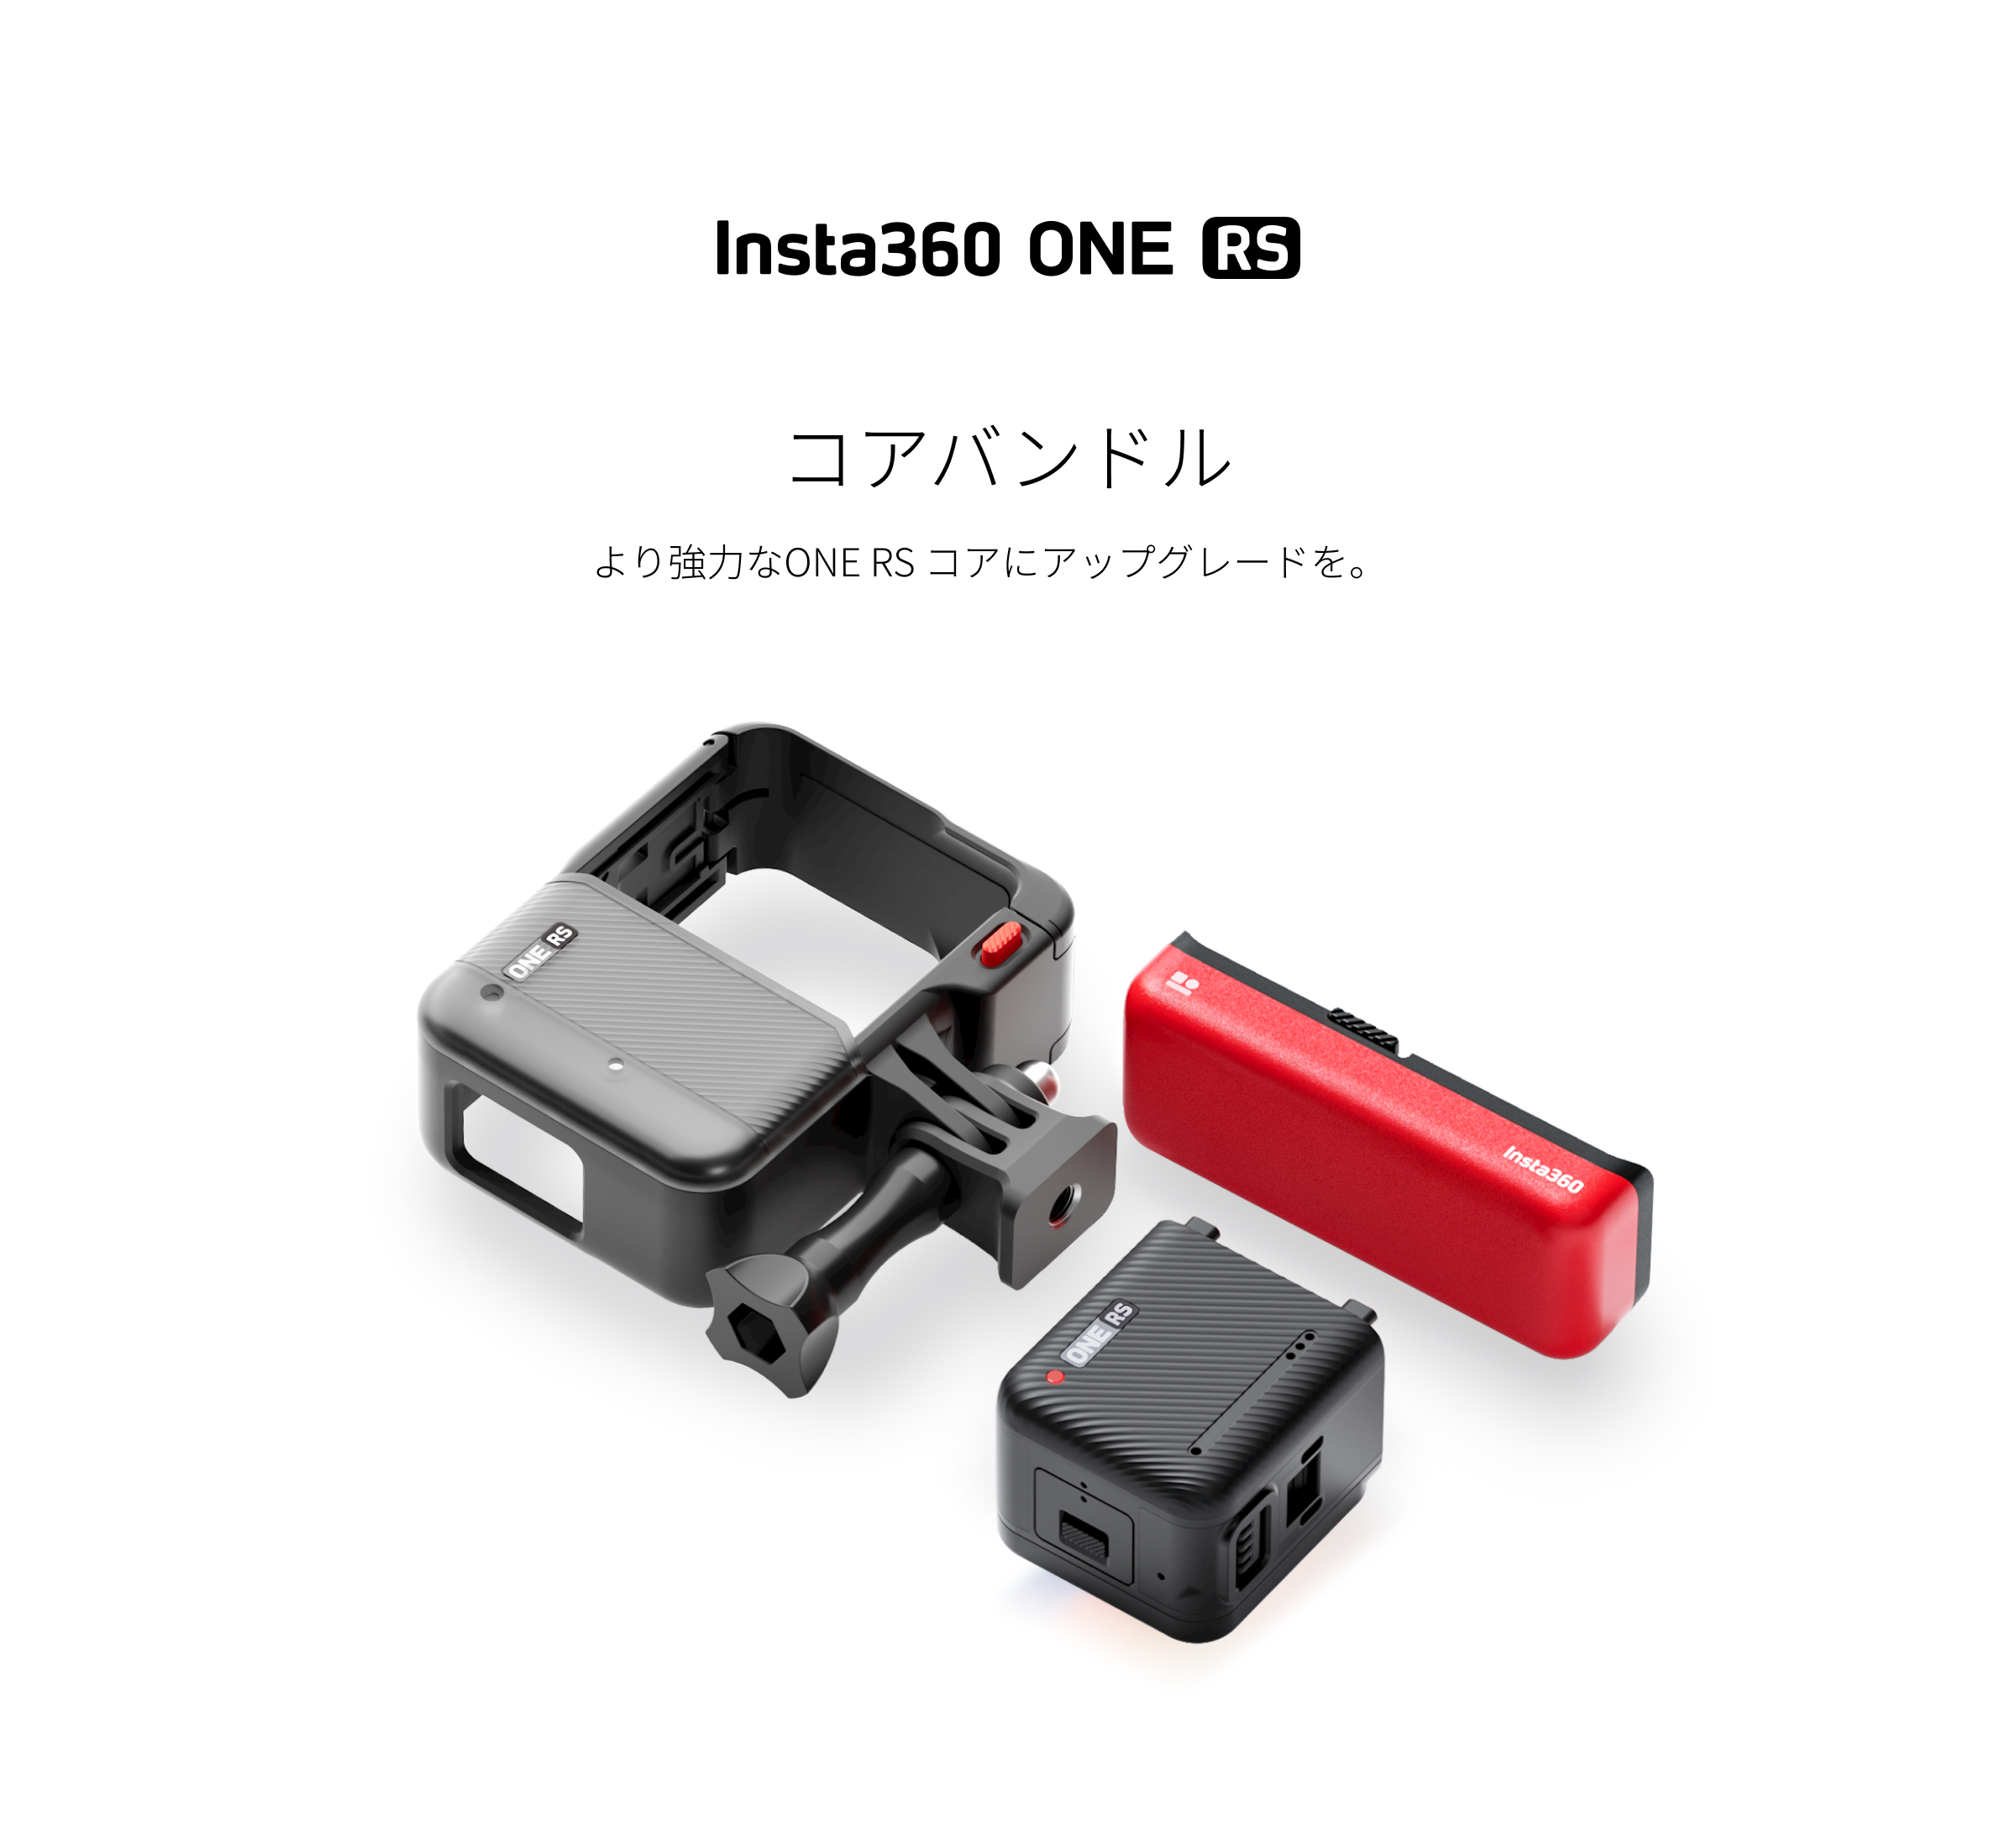 ONE RS コア バンドル - マウントブラケット、バッテリーが含まれます - Insta360